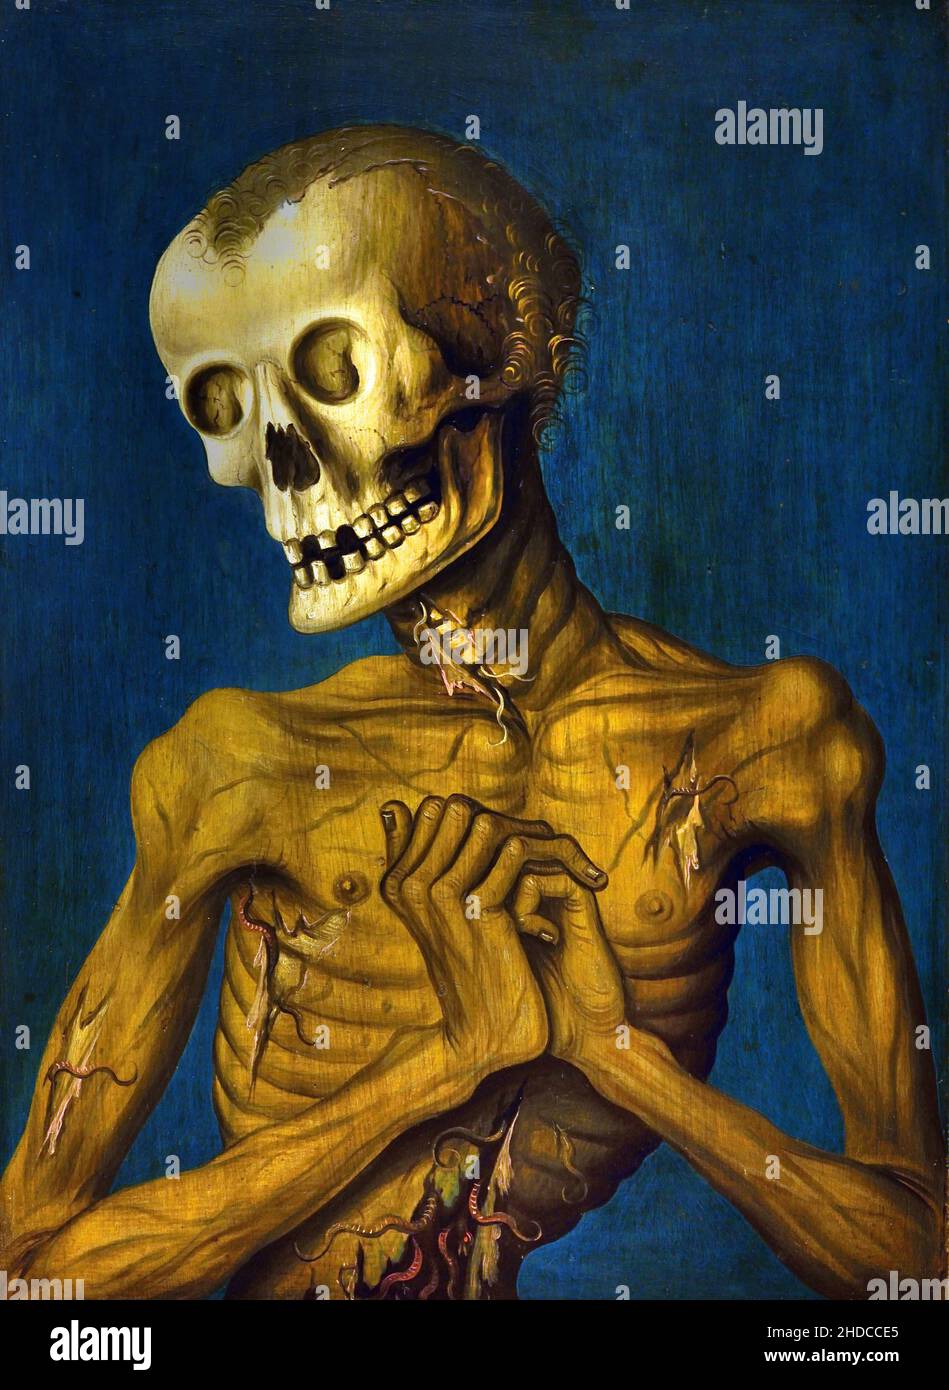 Ritratto di Hieronymus Tscacenburlin e morte -'Hieronymus Tscheckenbürlin e la personificazione della morte', 1487, Maestro Ignoto, tedesco, Germania, Foto Stock